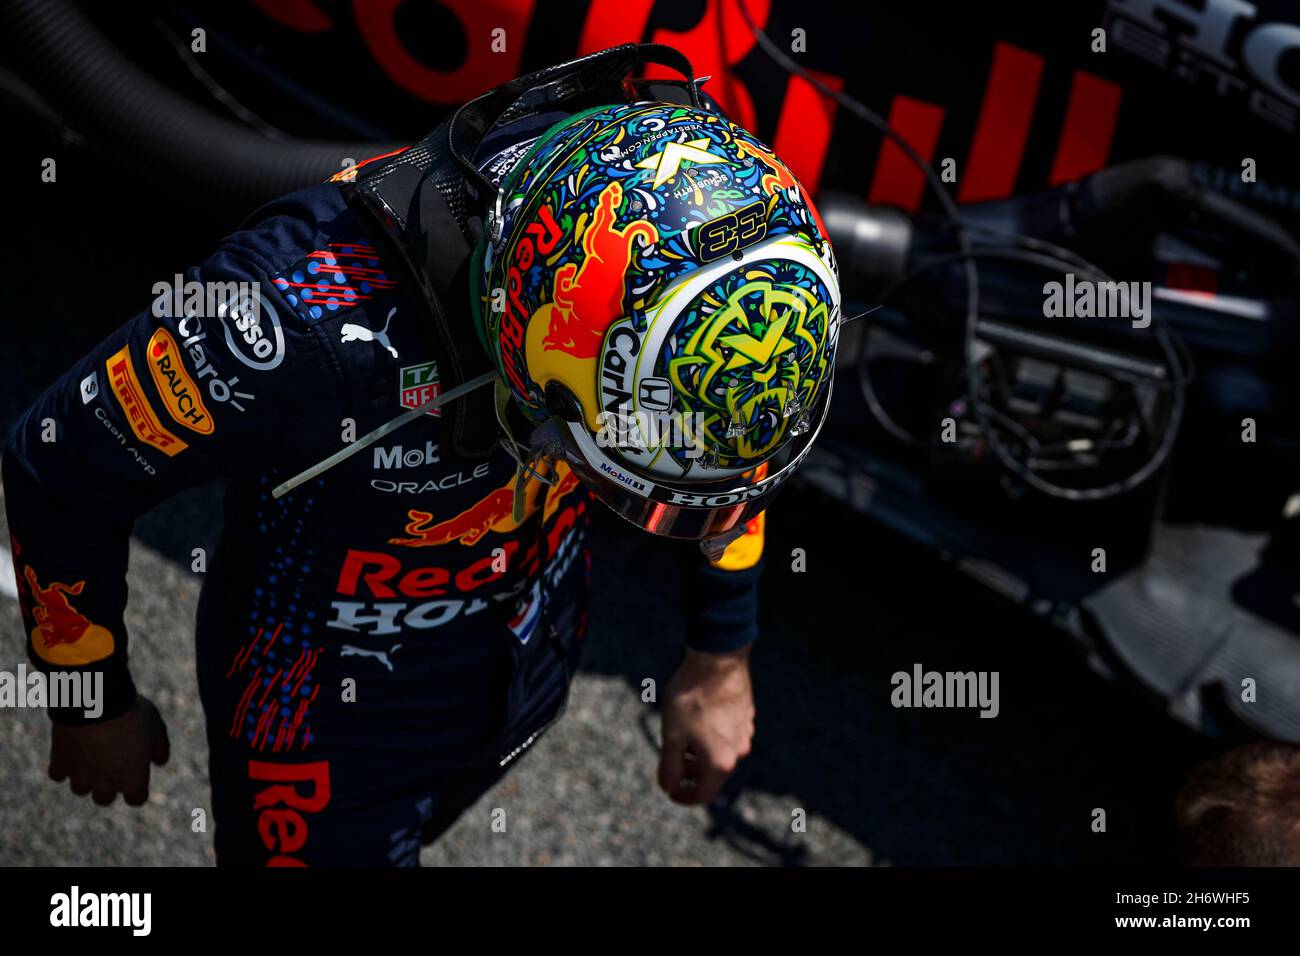 Sao Paulo, Brasil. 14th Nov, 2021. # 33 Max Verstappen (NED, Red Bull Racing), F1 Gran Premio de Brasil en el Autodromo José Carlos Pace el 14 de noviembre de 2021 en Sao Paulo, Brasil. (Foto de HOCH ZWEI) Crédito: dpa/Alamy Live News Foto de stock